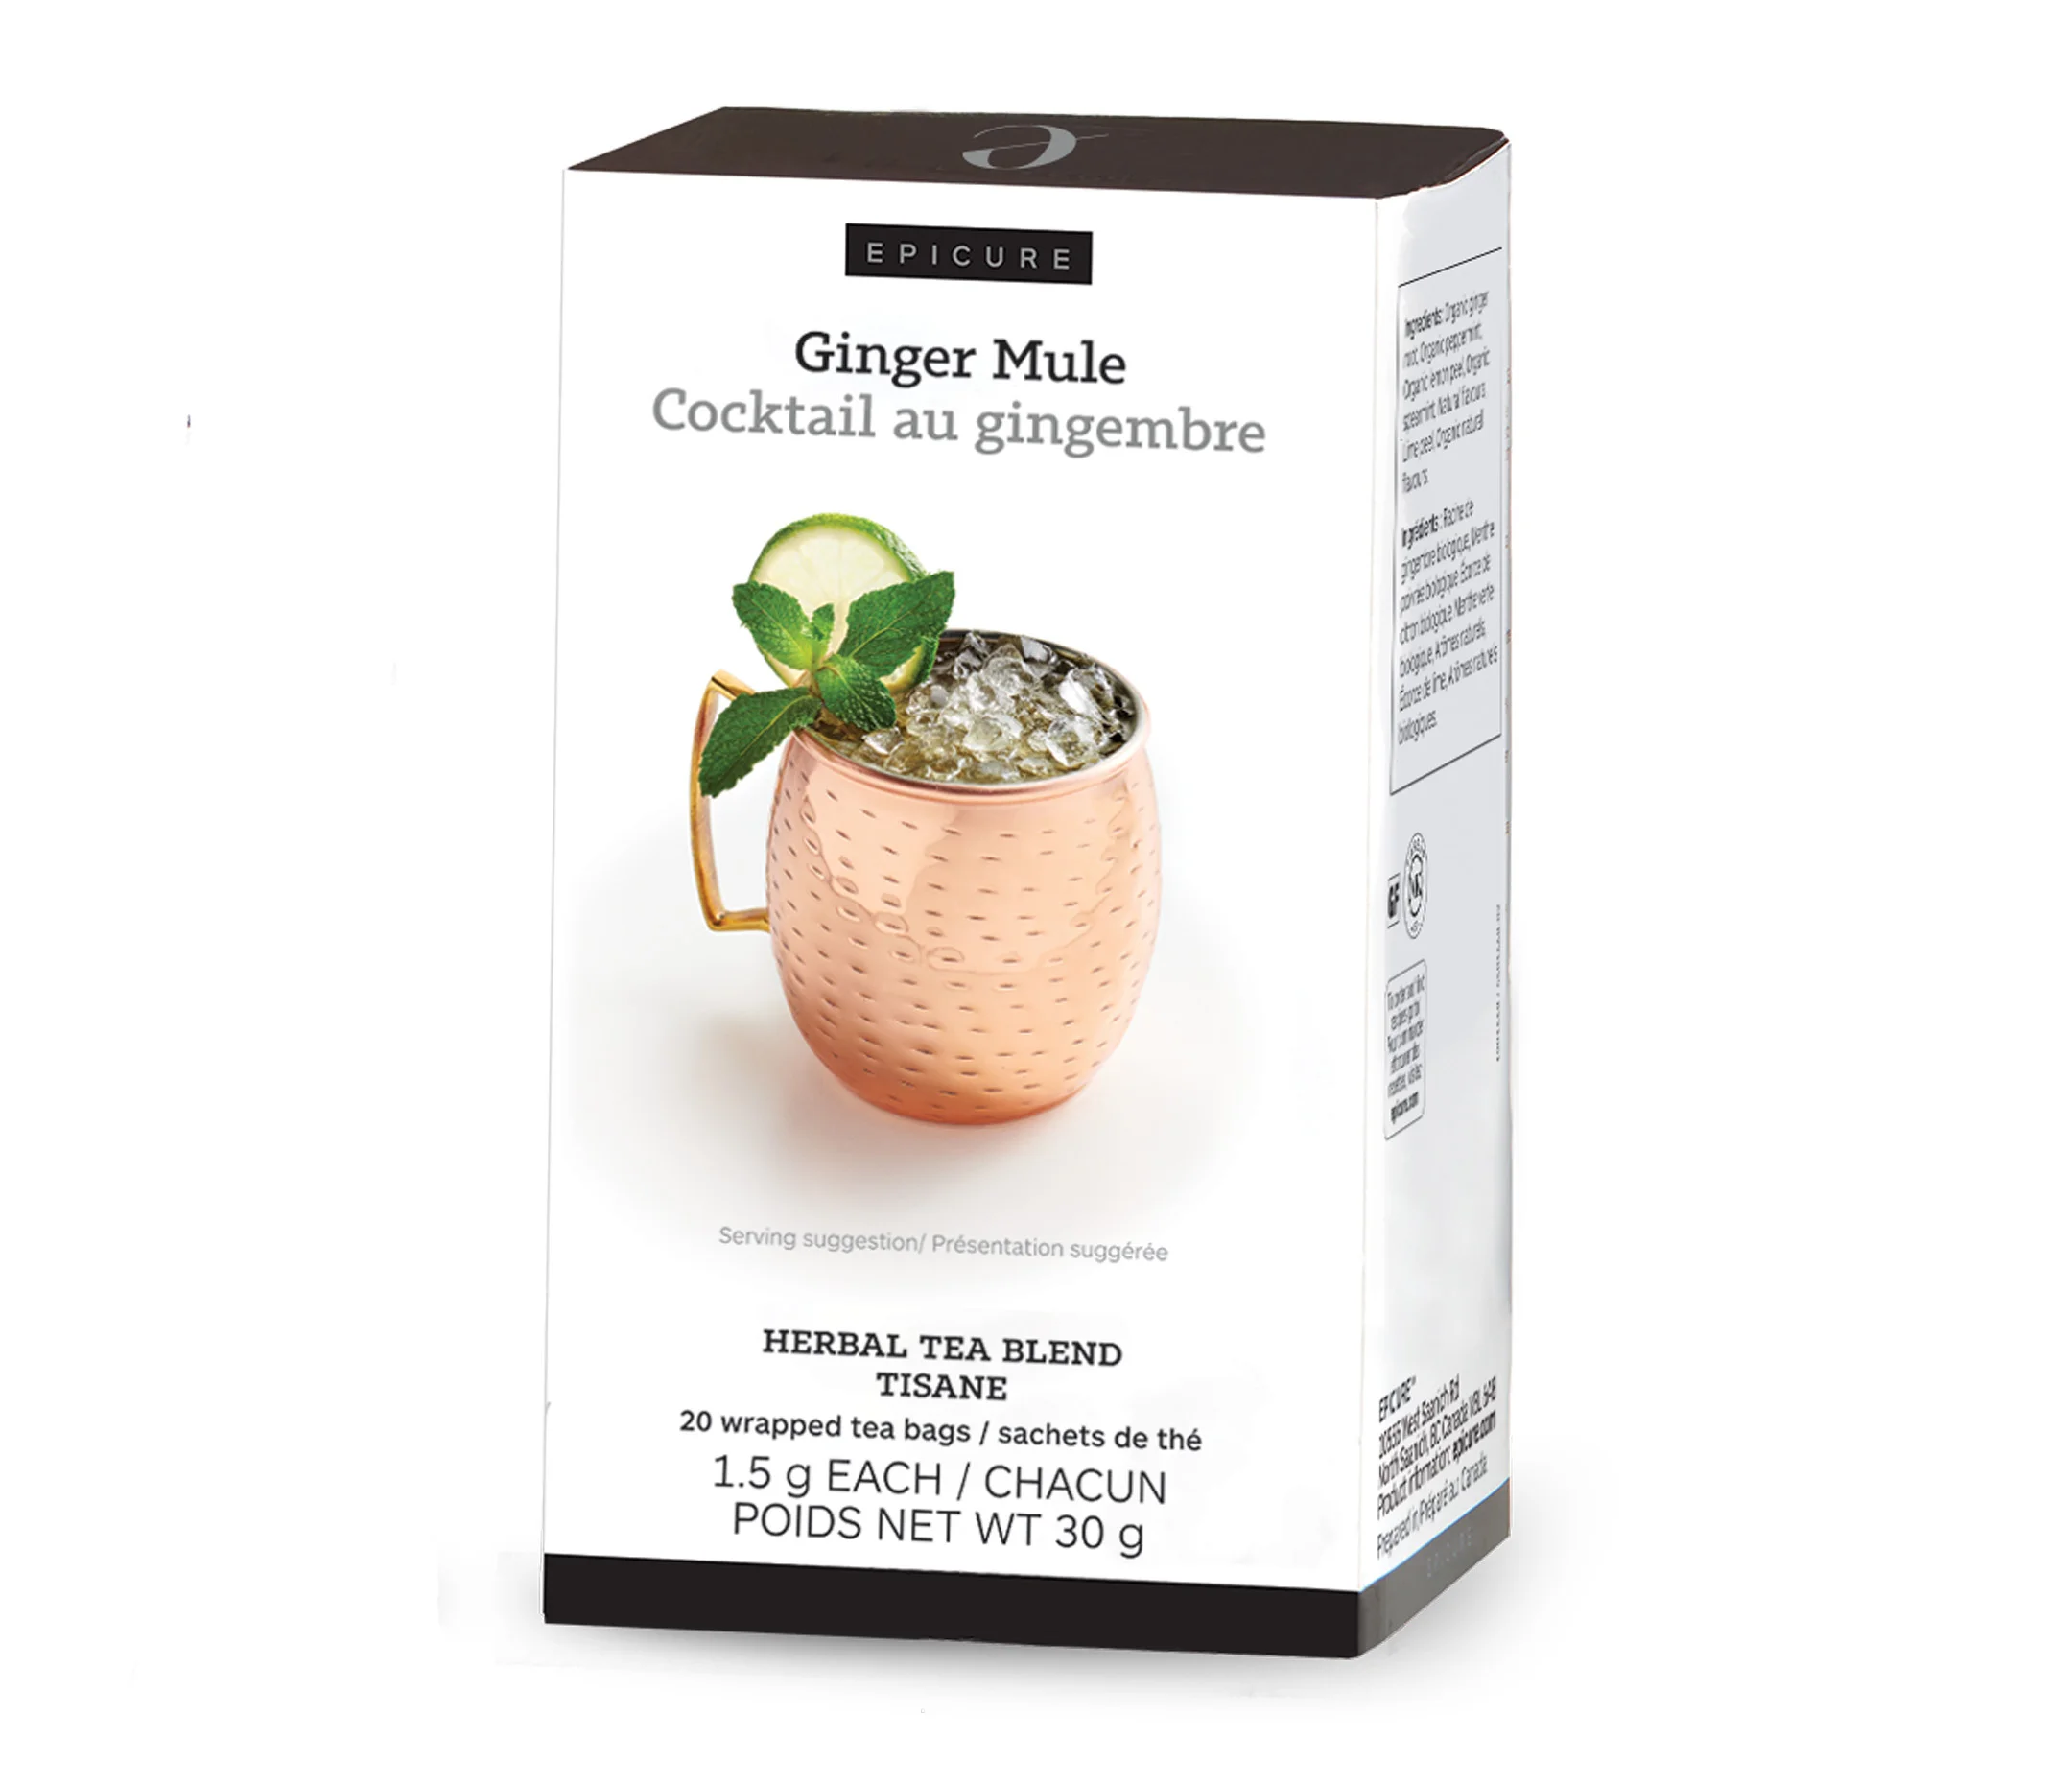 Ginger Mule Herbal Tea Blend